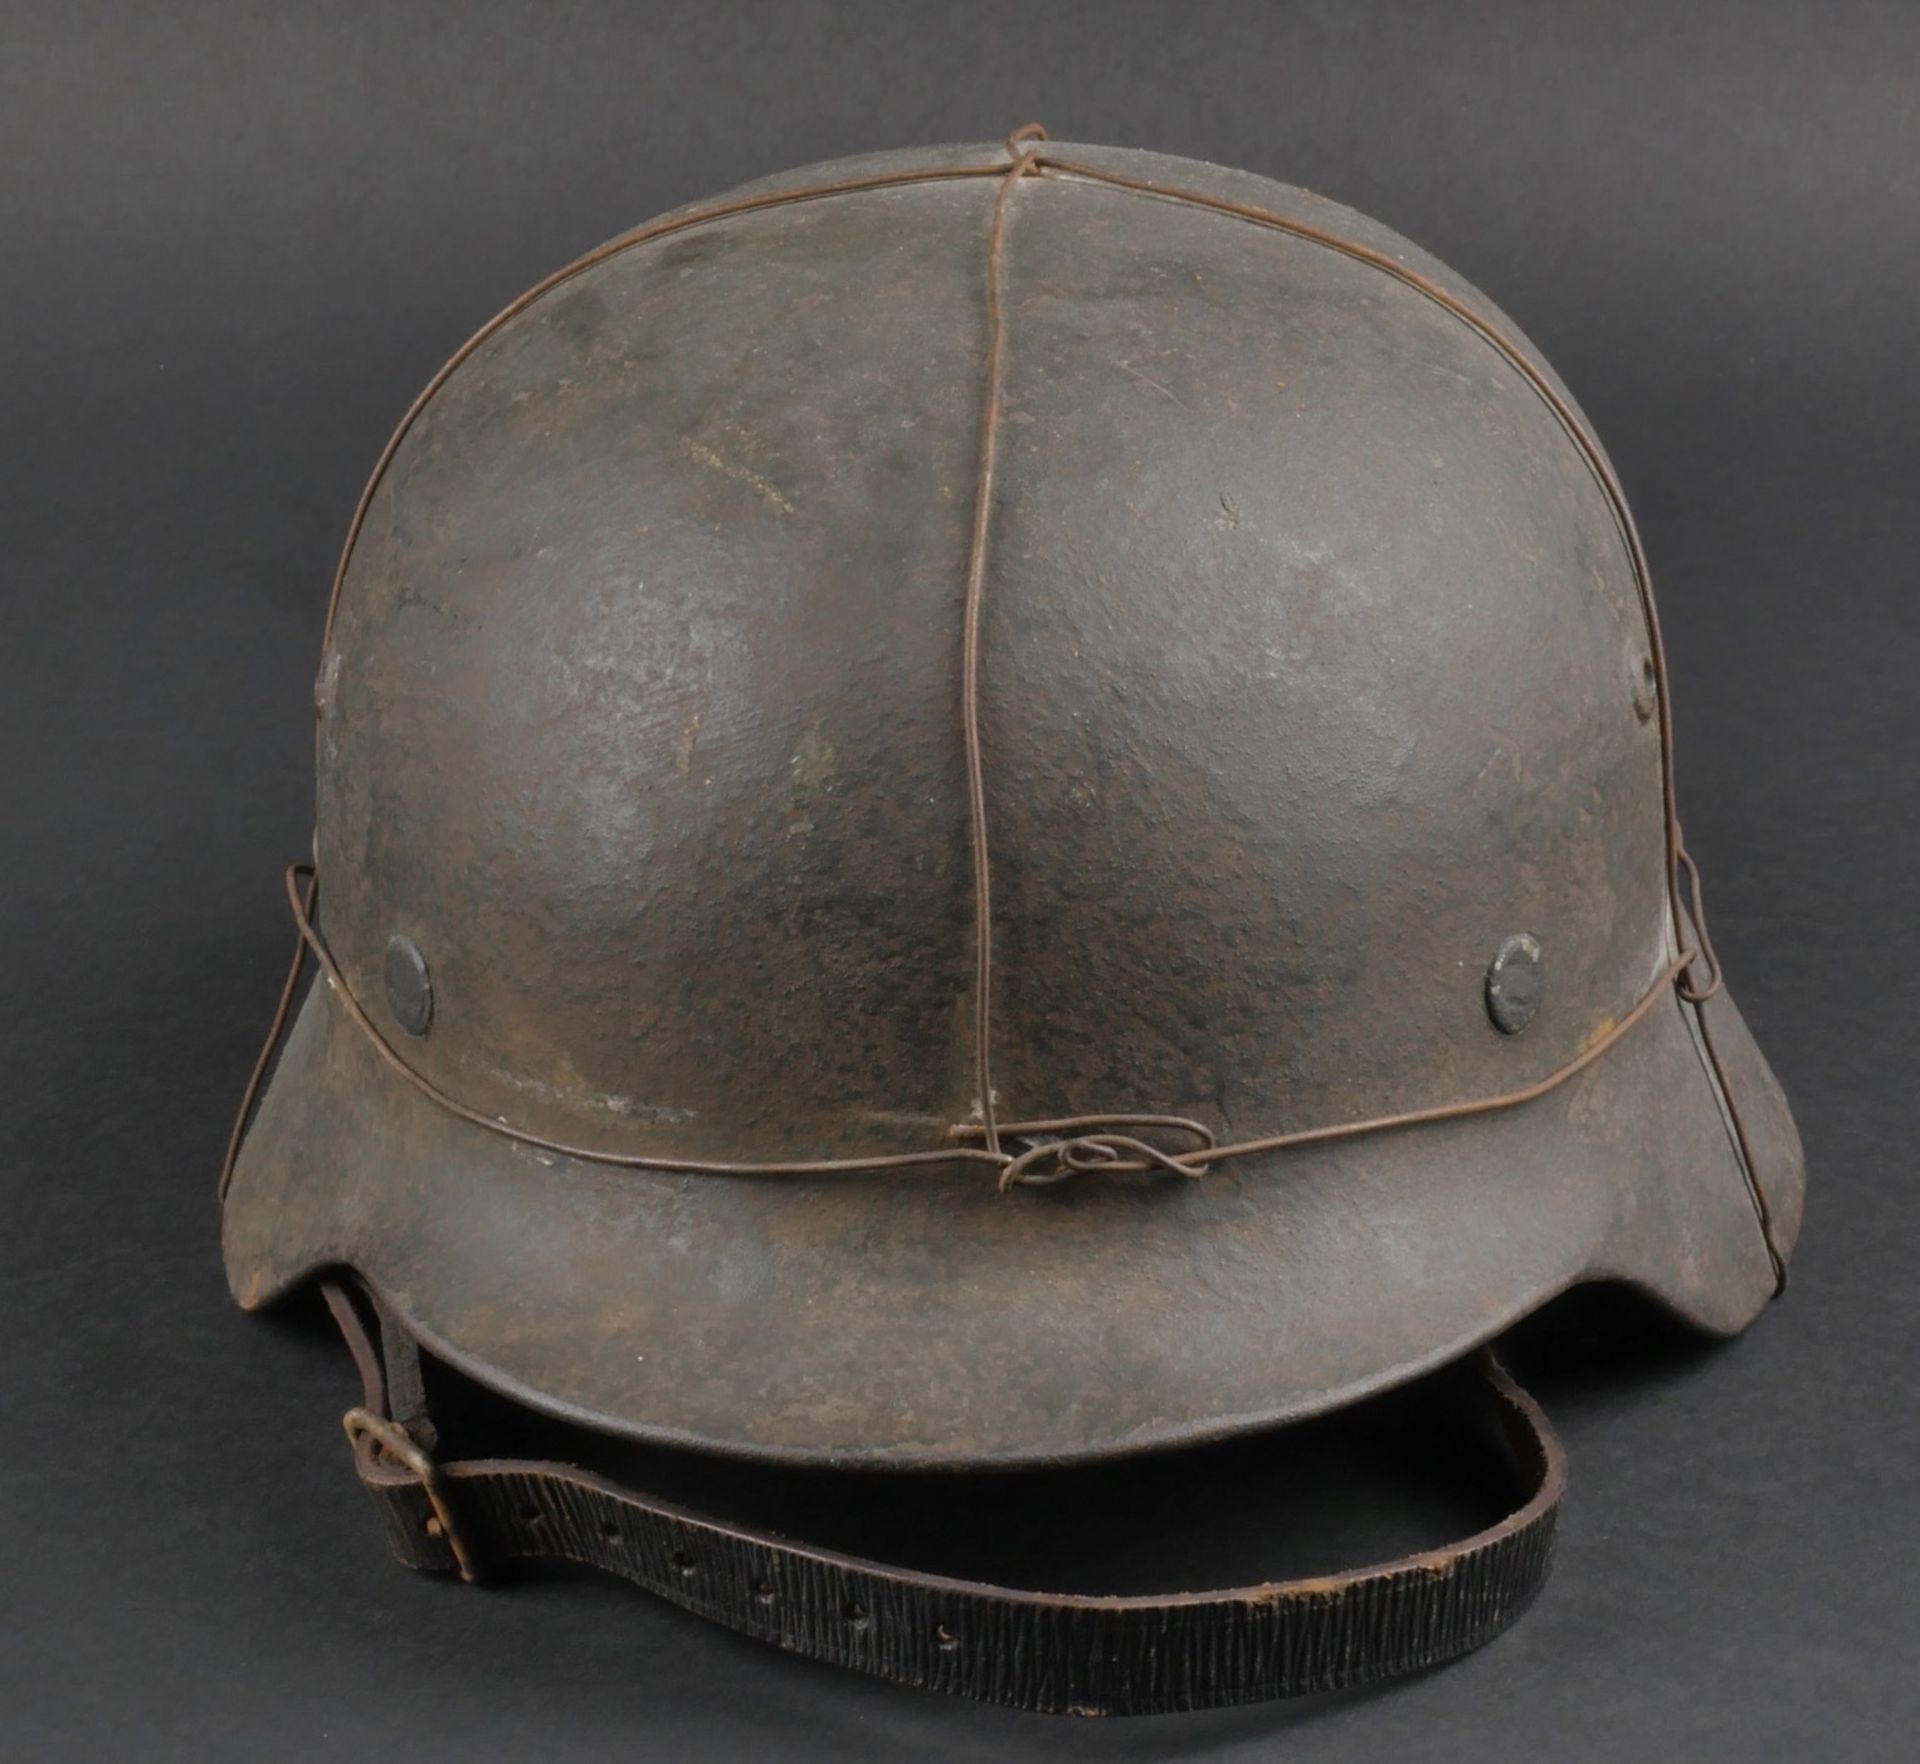 Casque allemand. German helmet. 